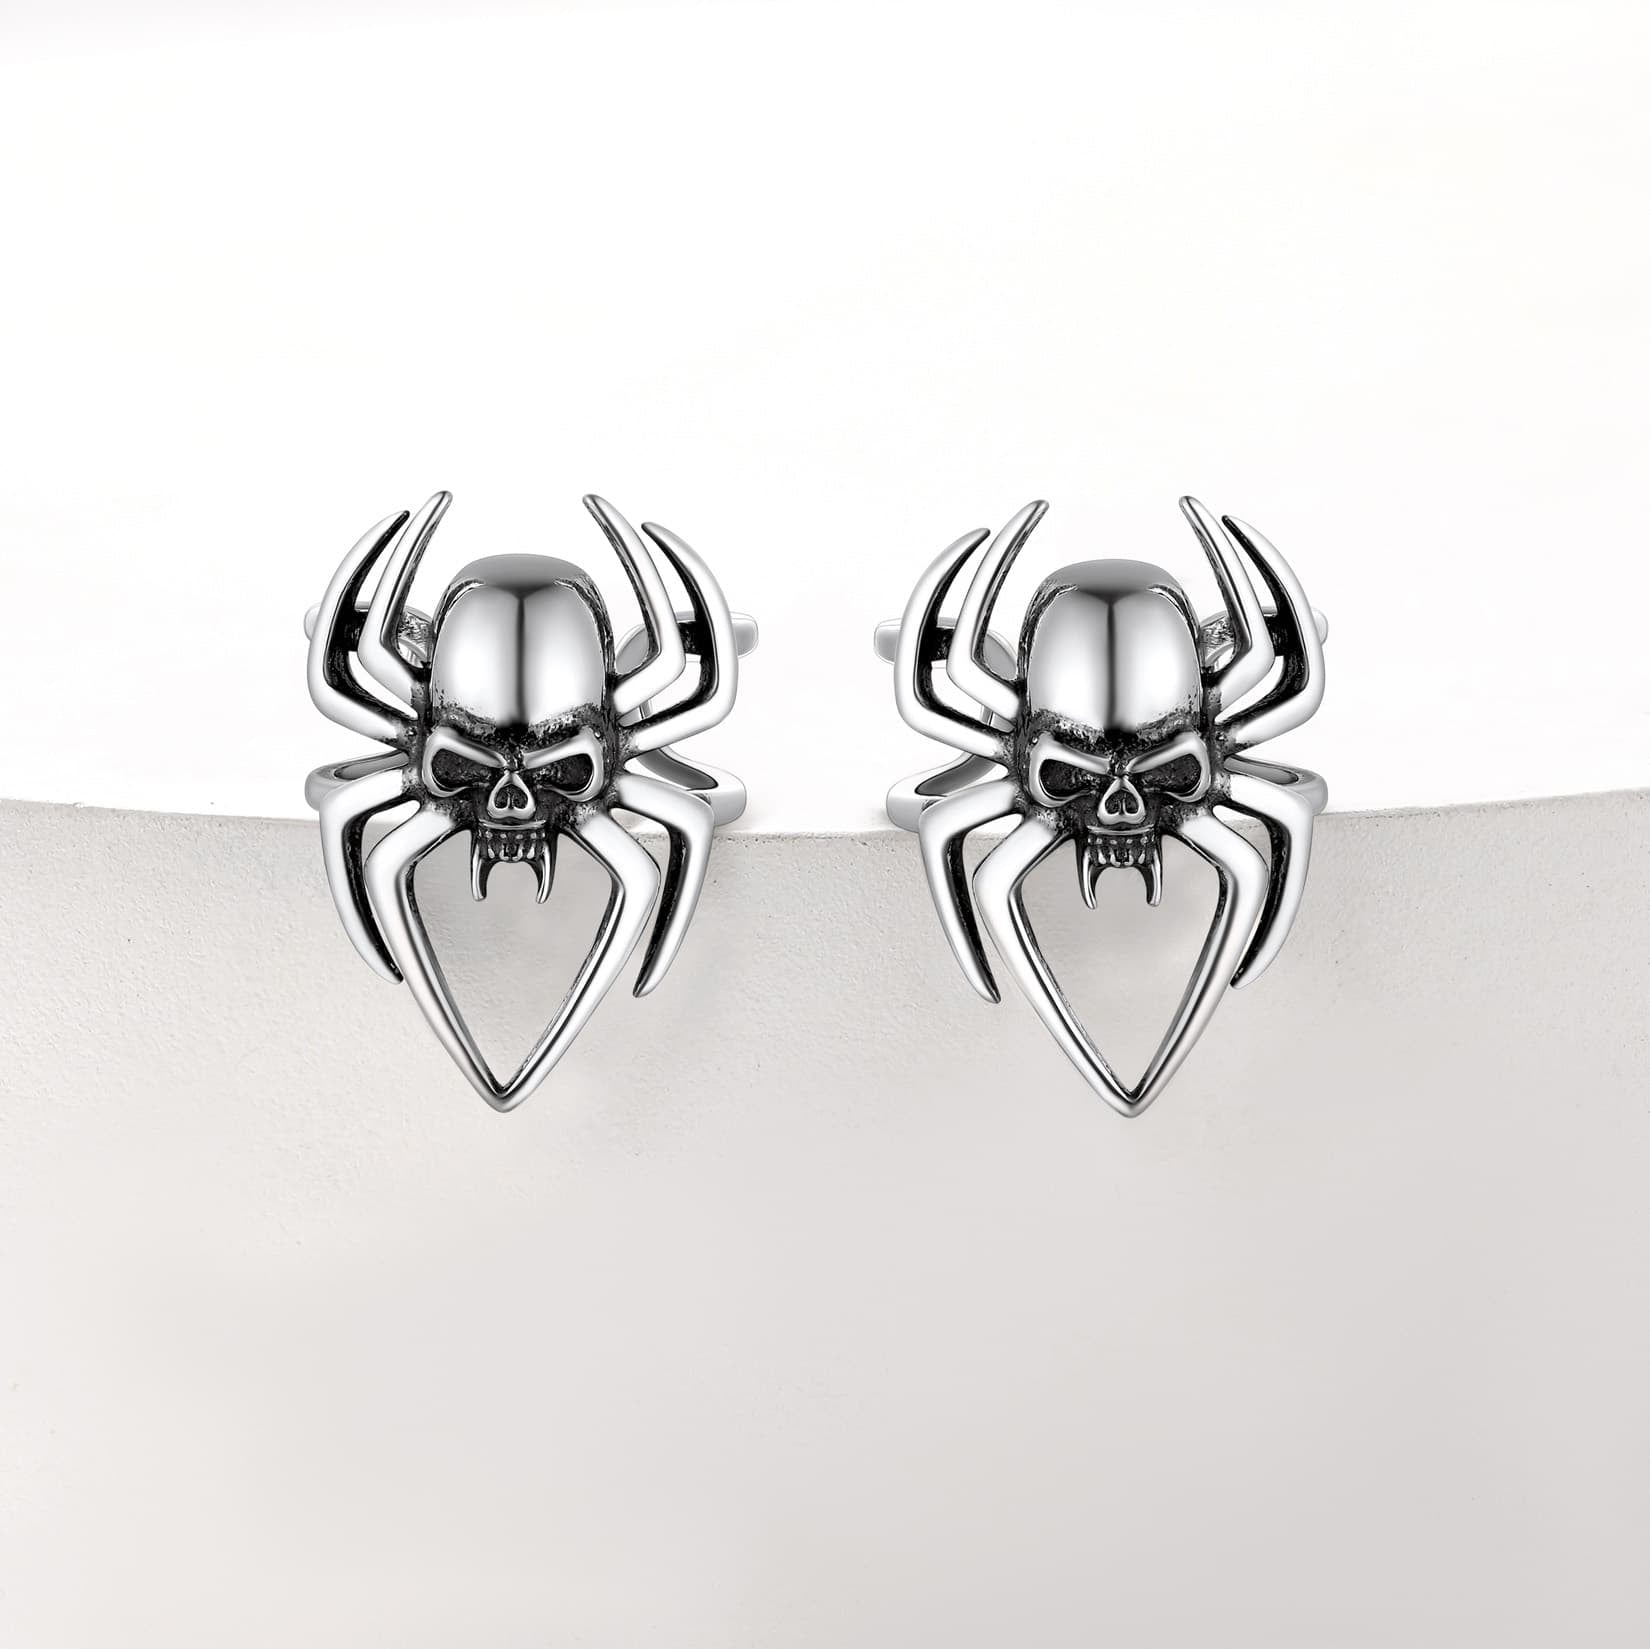 FaithHeart Sterling Silver Spider Skull Ear Cuff Earrings For Men FaithHeart